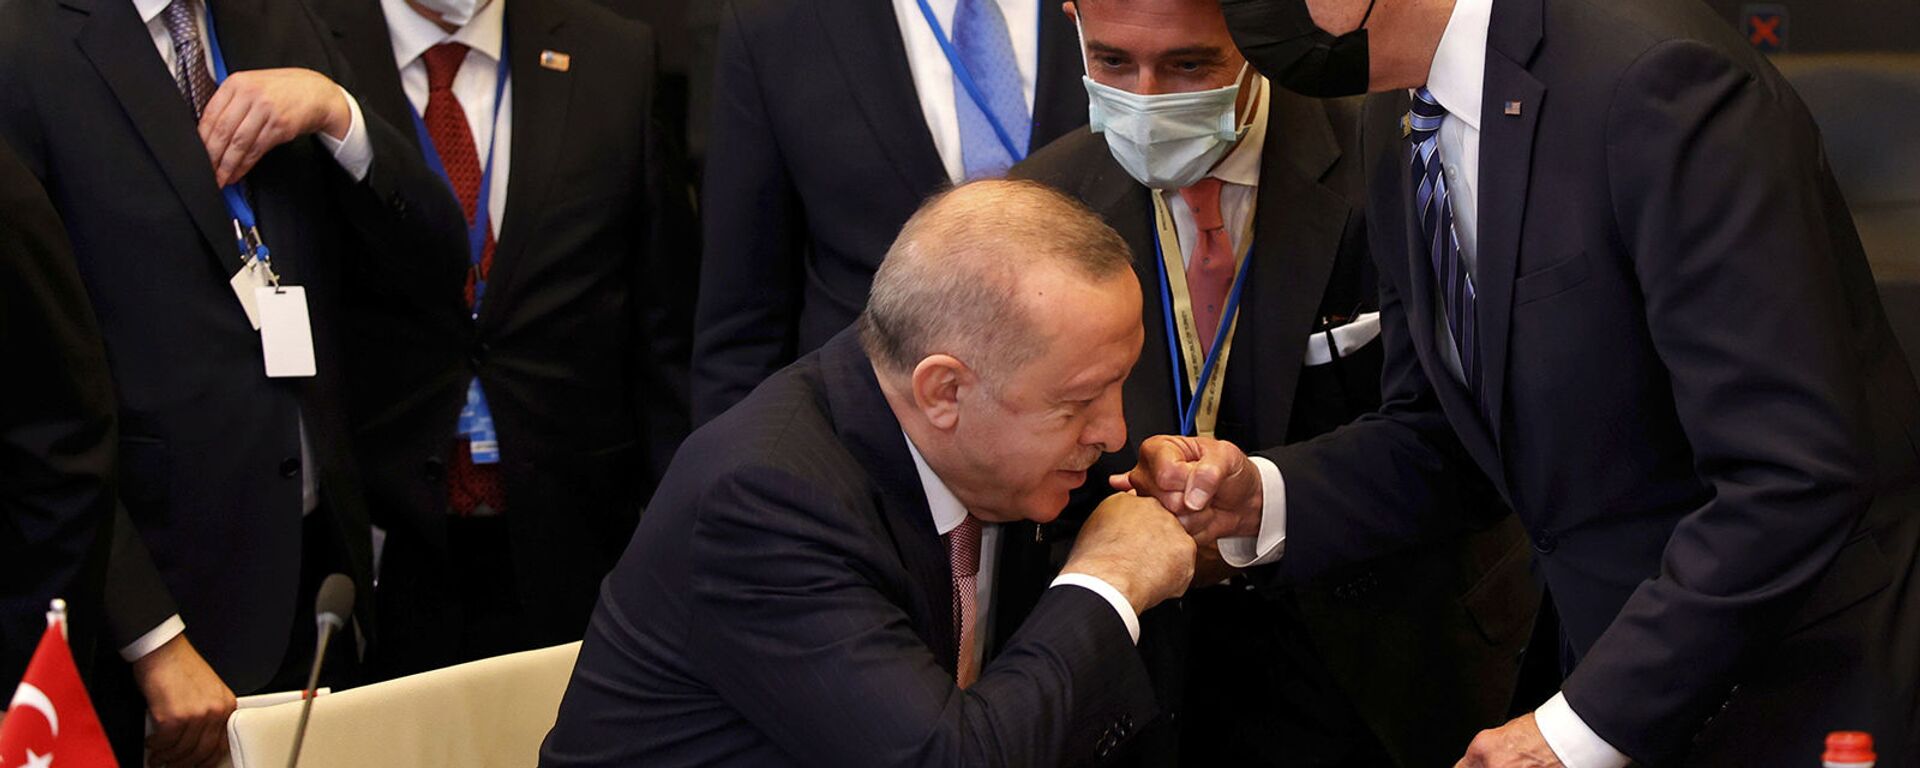 Президент Турции Реджеп Тайип Эрдоган здоровается с президентом США Джо Байденом во время пленарного заседания саммита НАТО в Брюсселе (14 июня 2021). Бельгия - Sputnik Армения, 1920, 27.10.2021